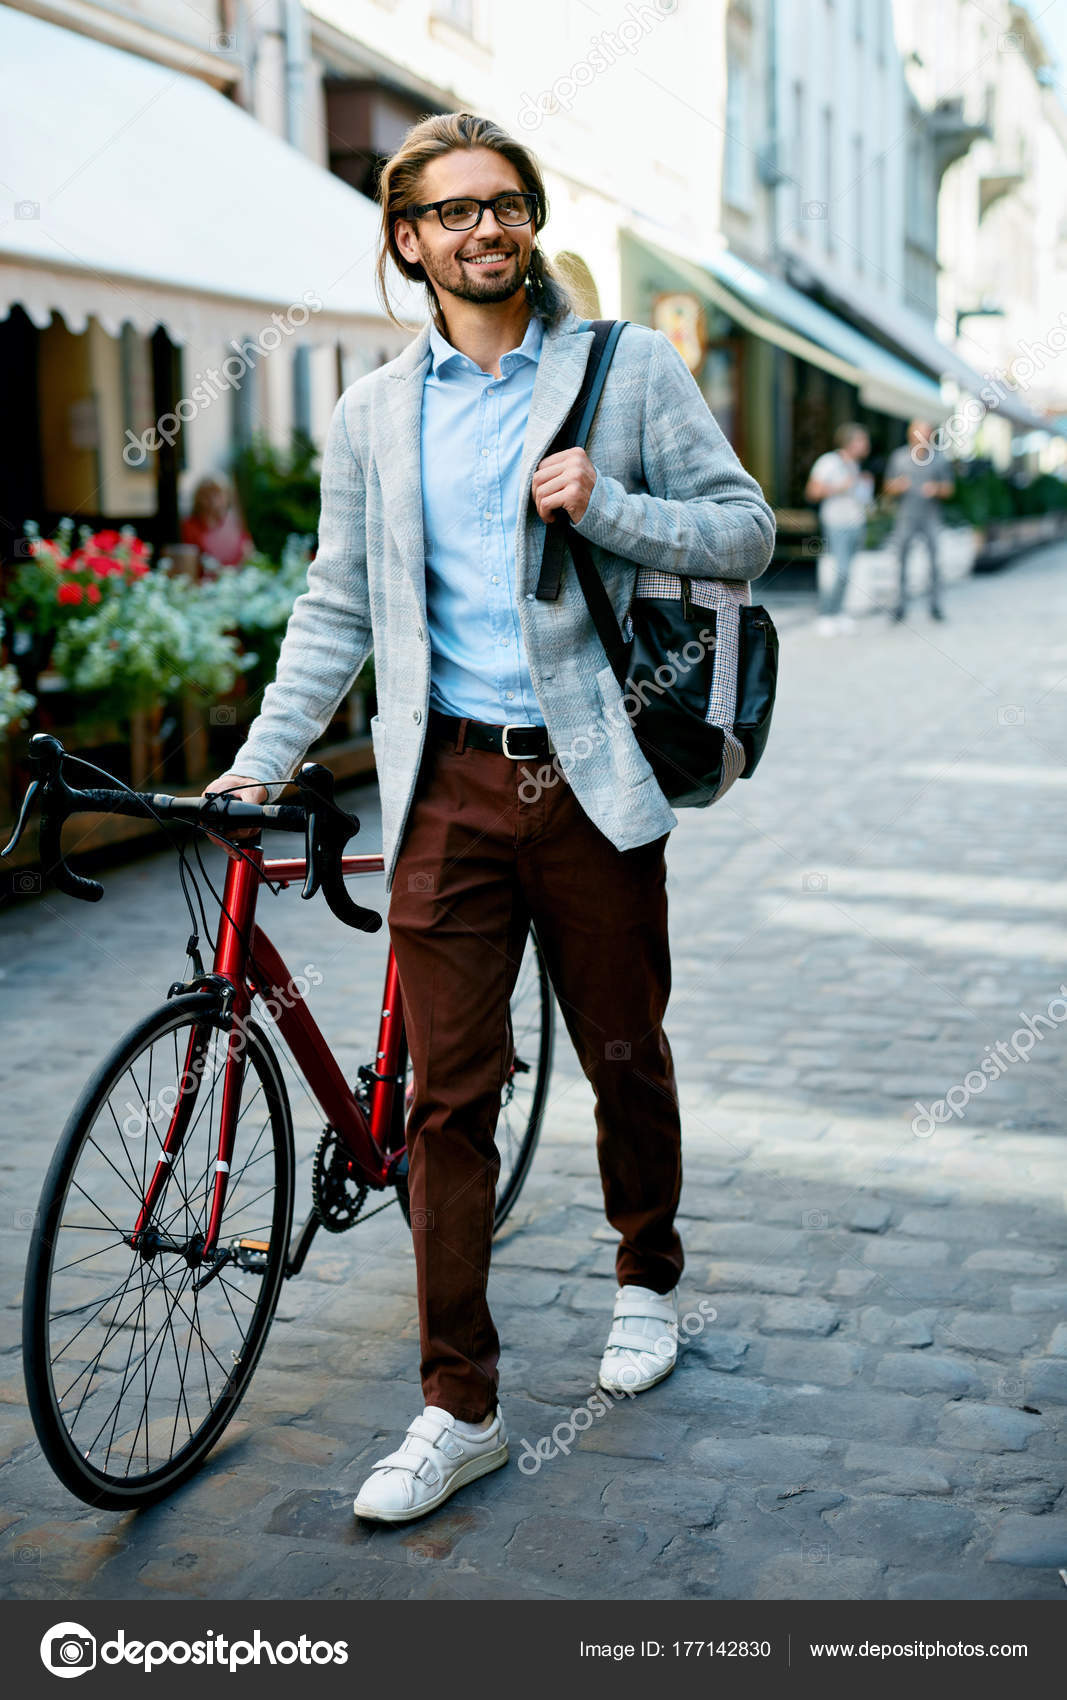 Elegante hombre con bicicleta va a trabajar en calle .: fotografía de stock © #177142830 | Depositphotos